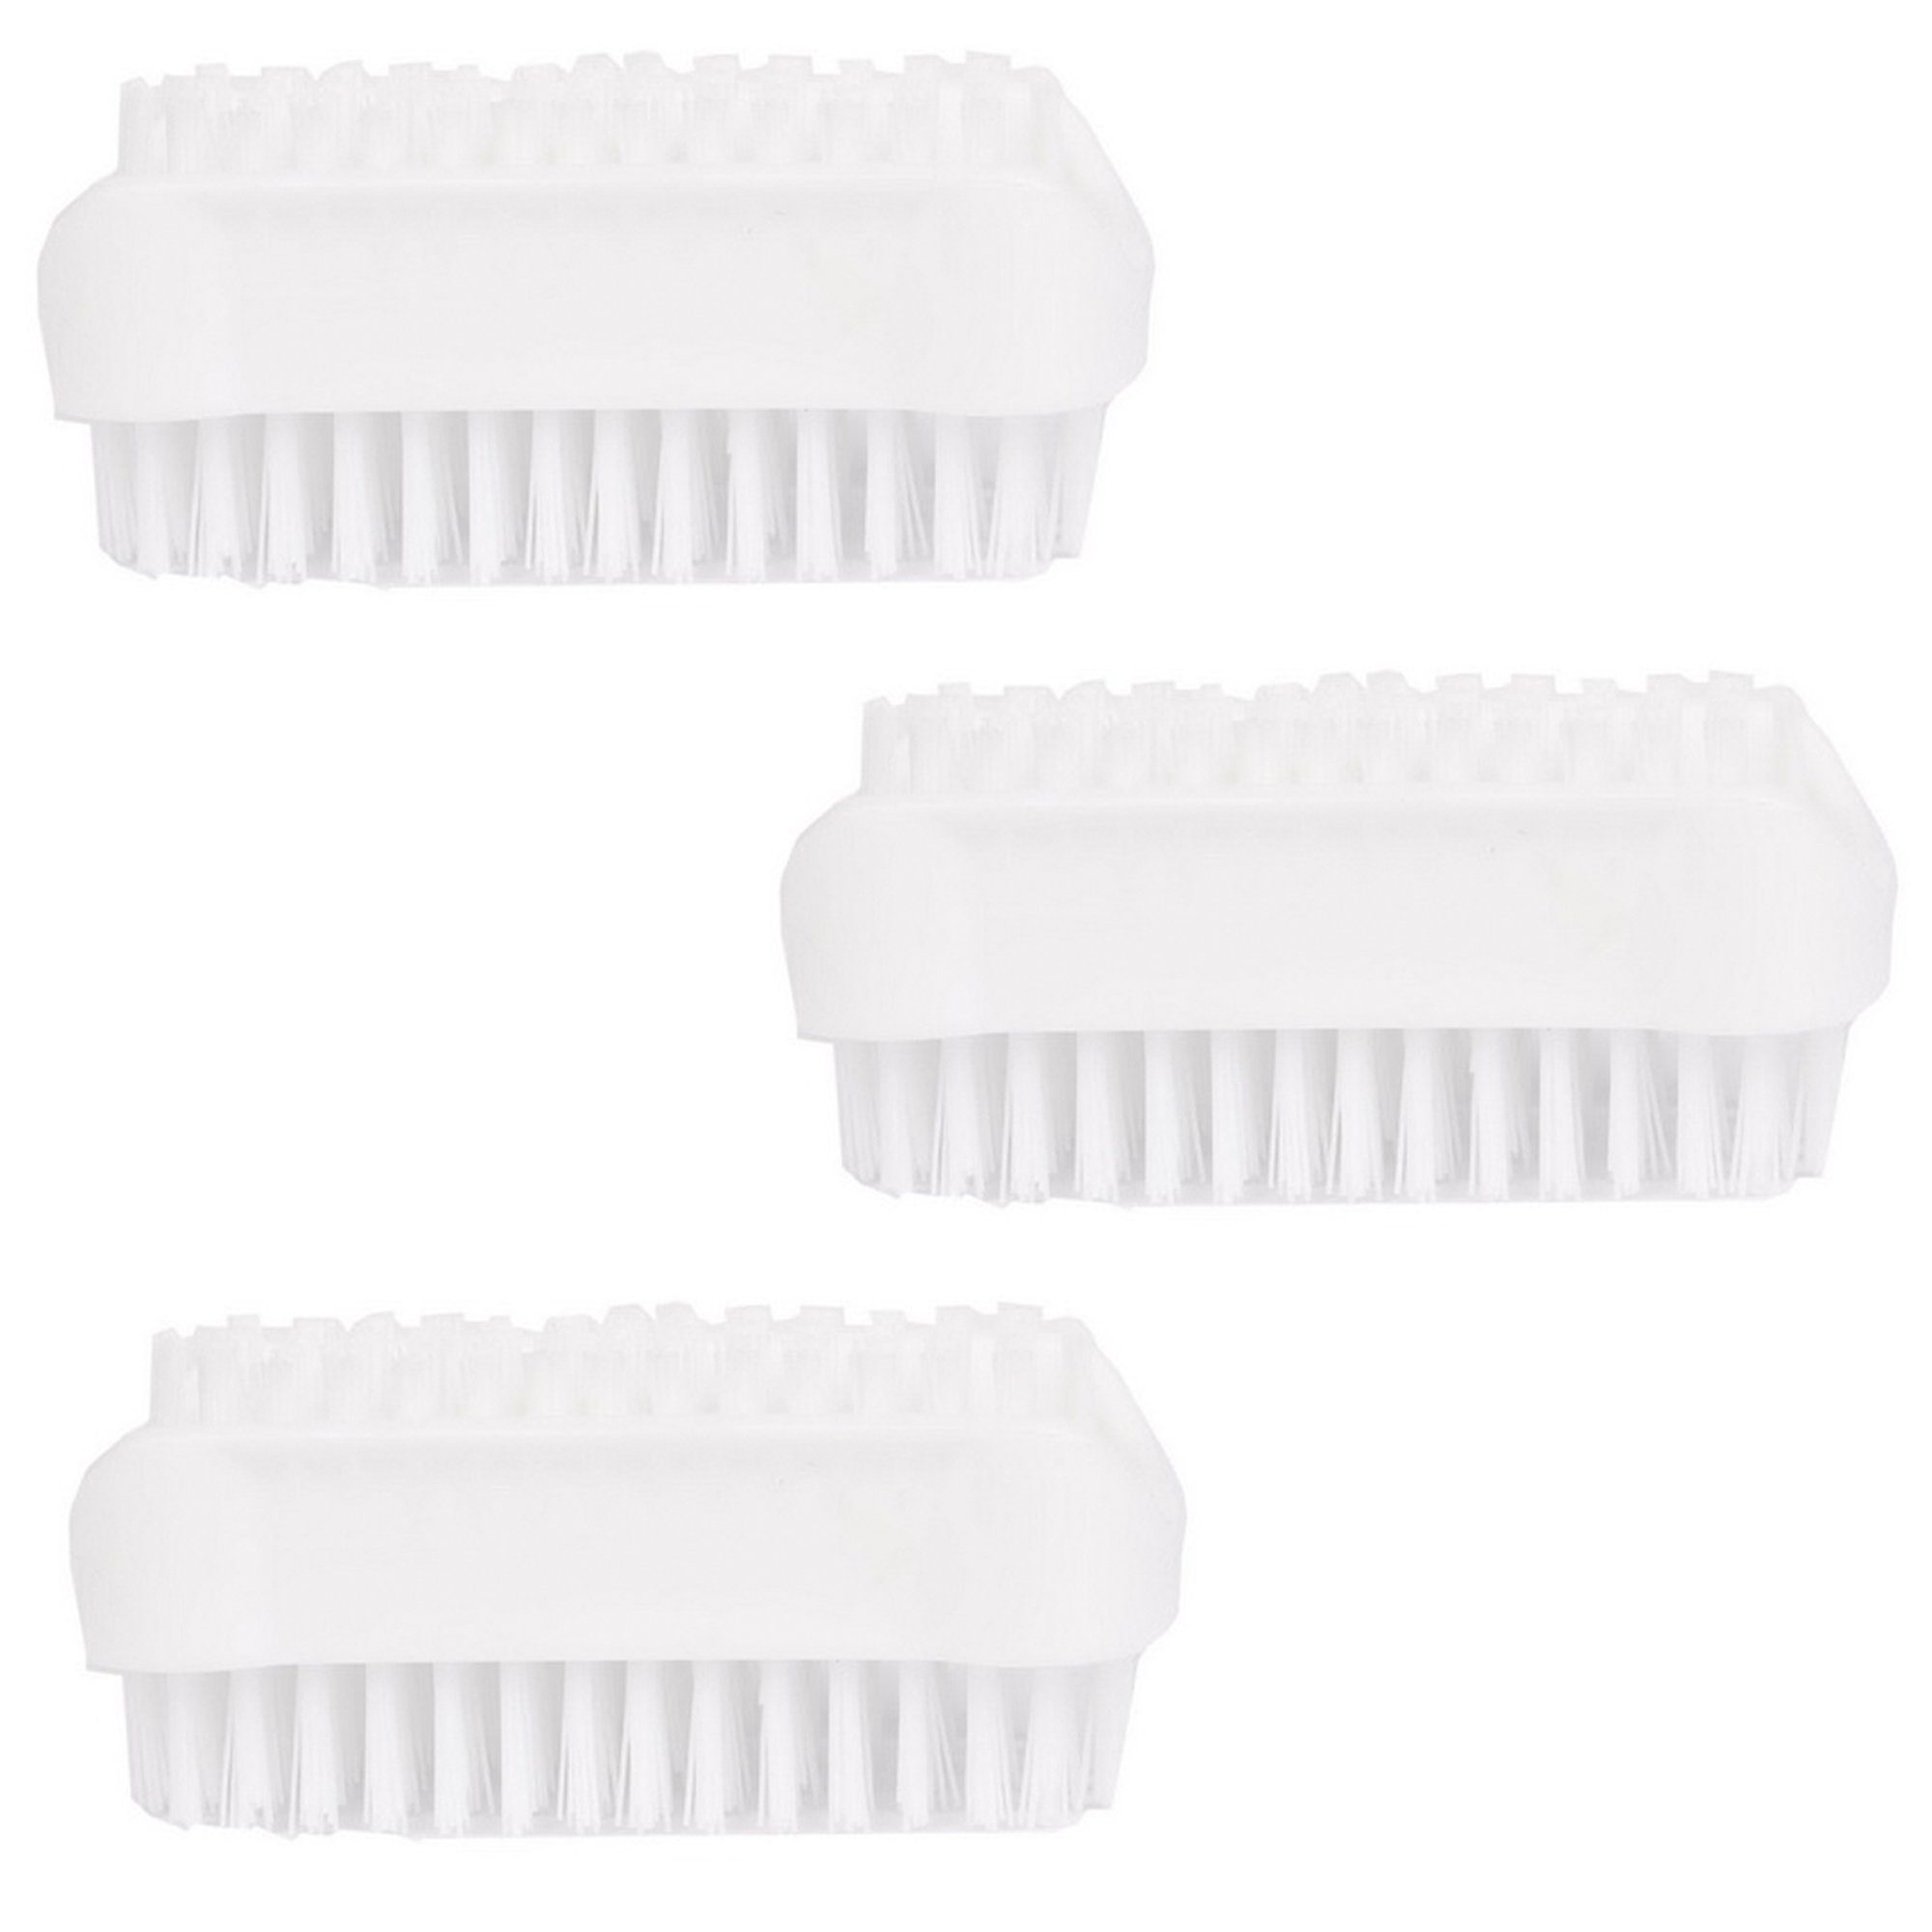 3er doppelseitige Nagelbürsten in Handwaschbürste, PARSA Beauty Badebürste Pack im weiss